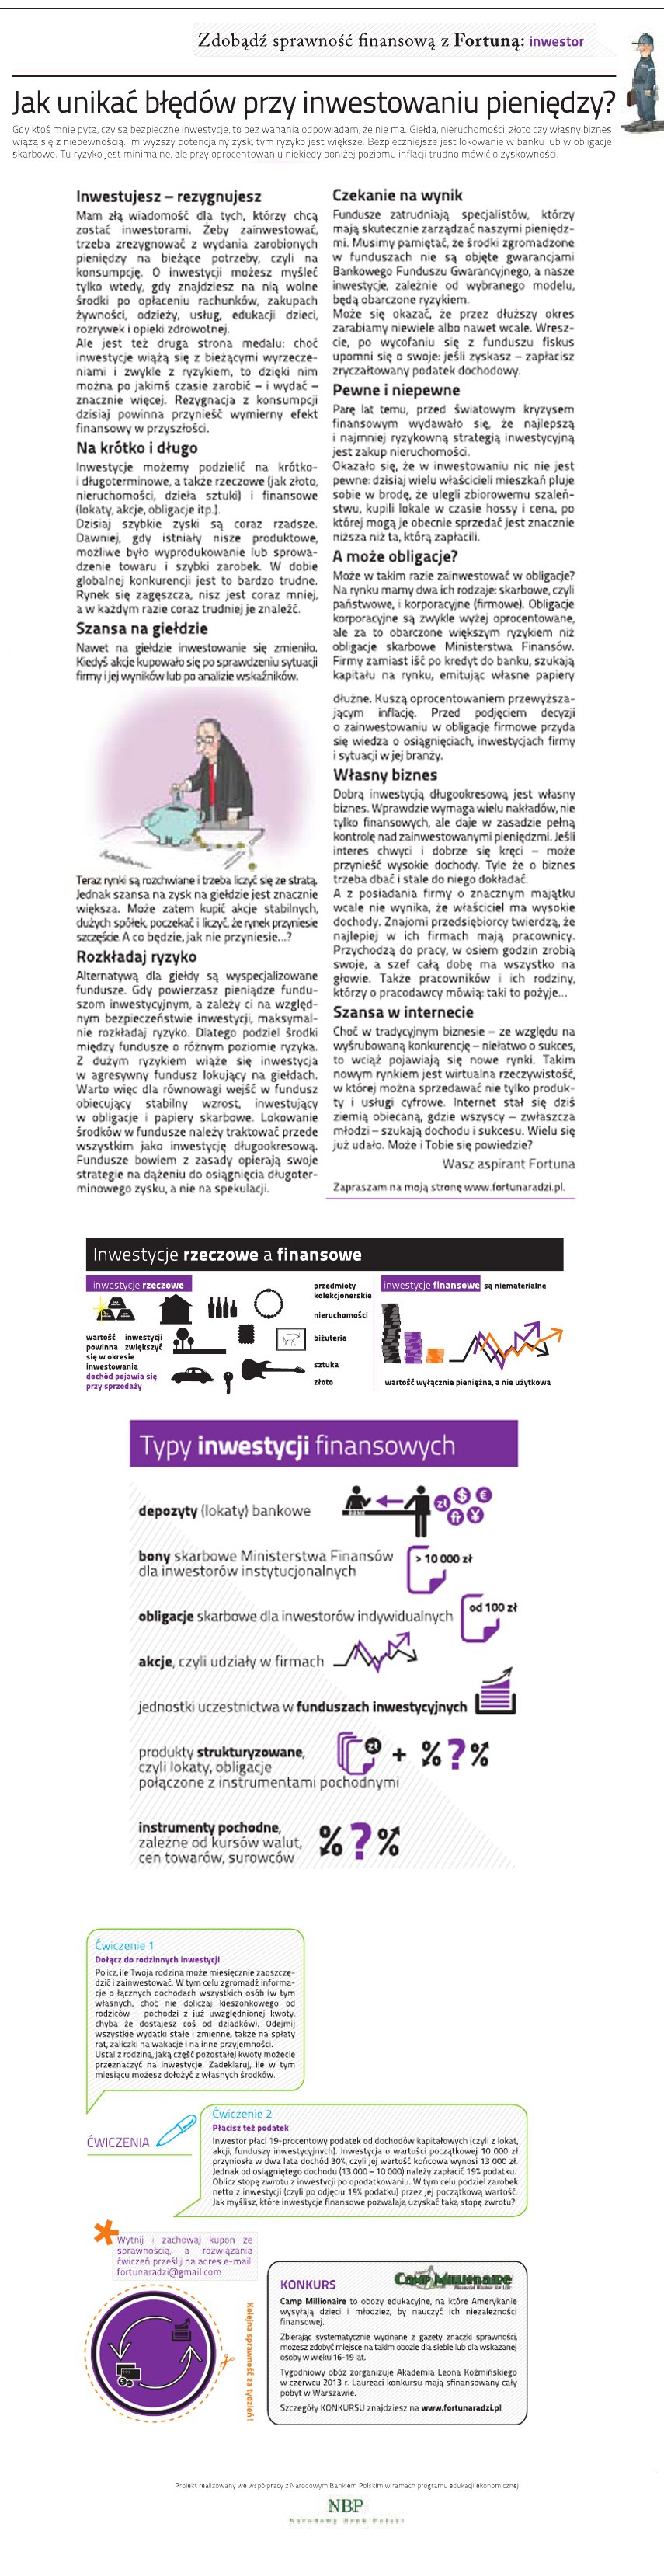 Inwestor - Aspirant Fortuna radzi [infografika] - Zdjęcie główne